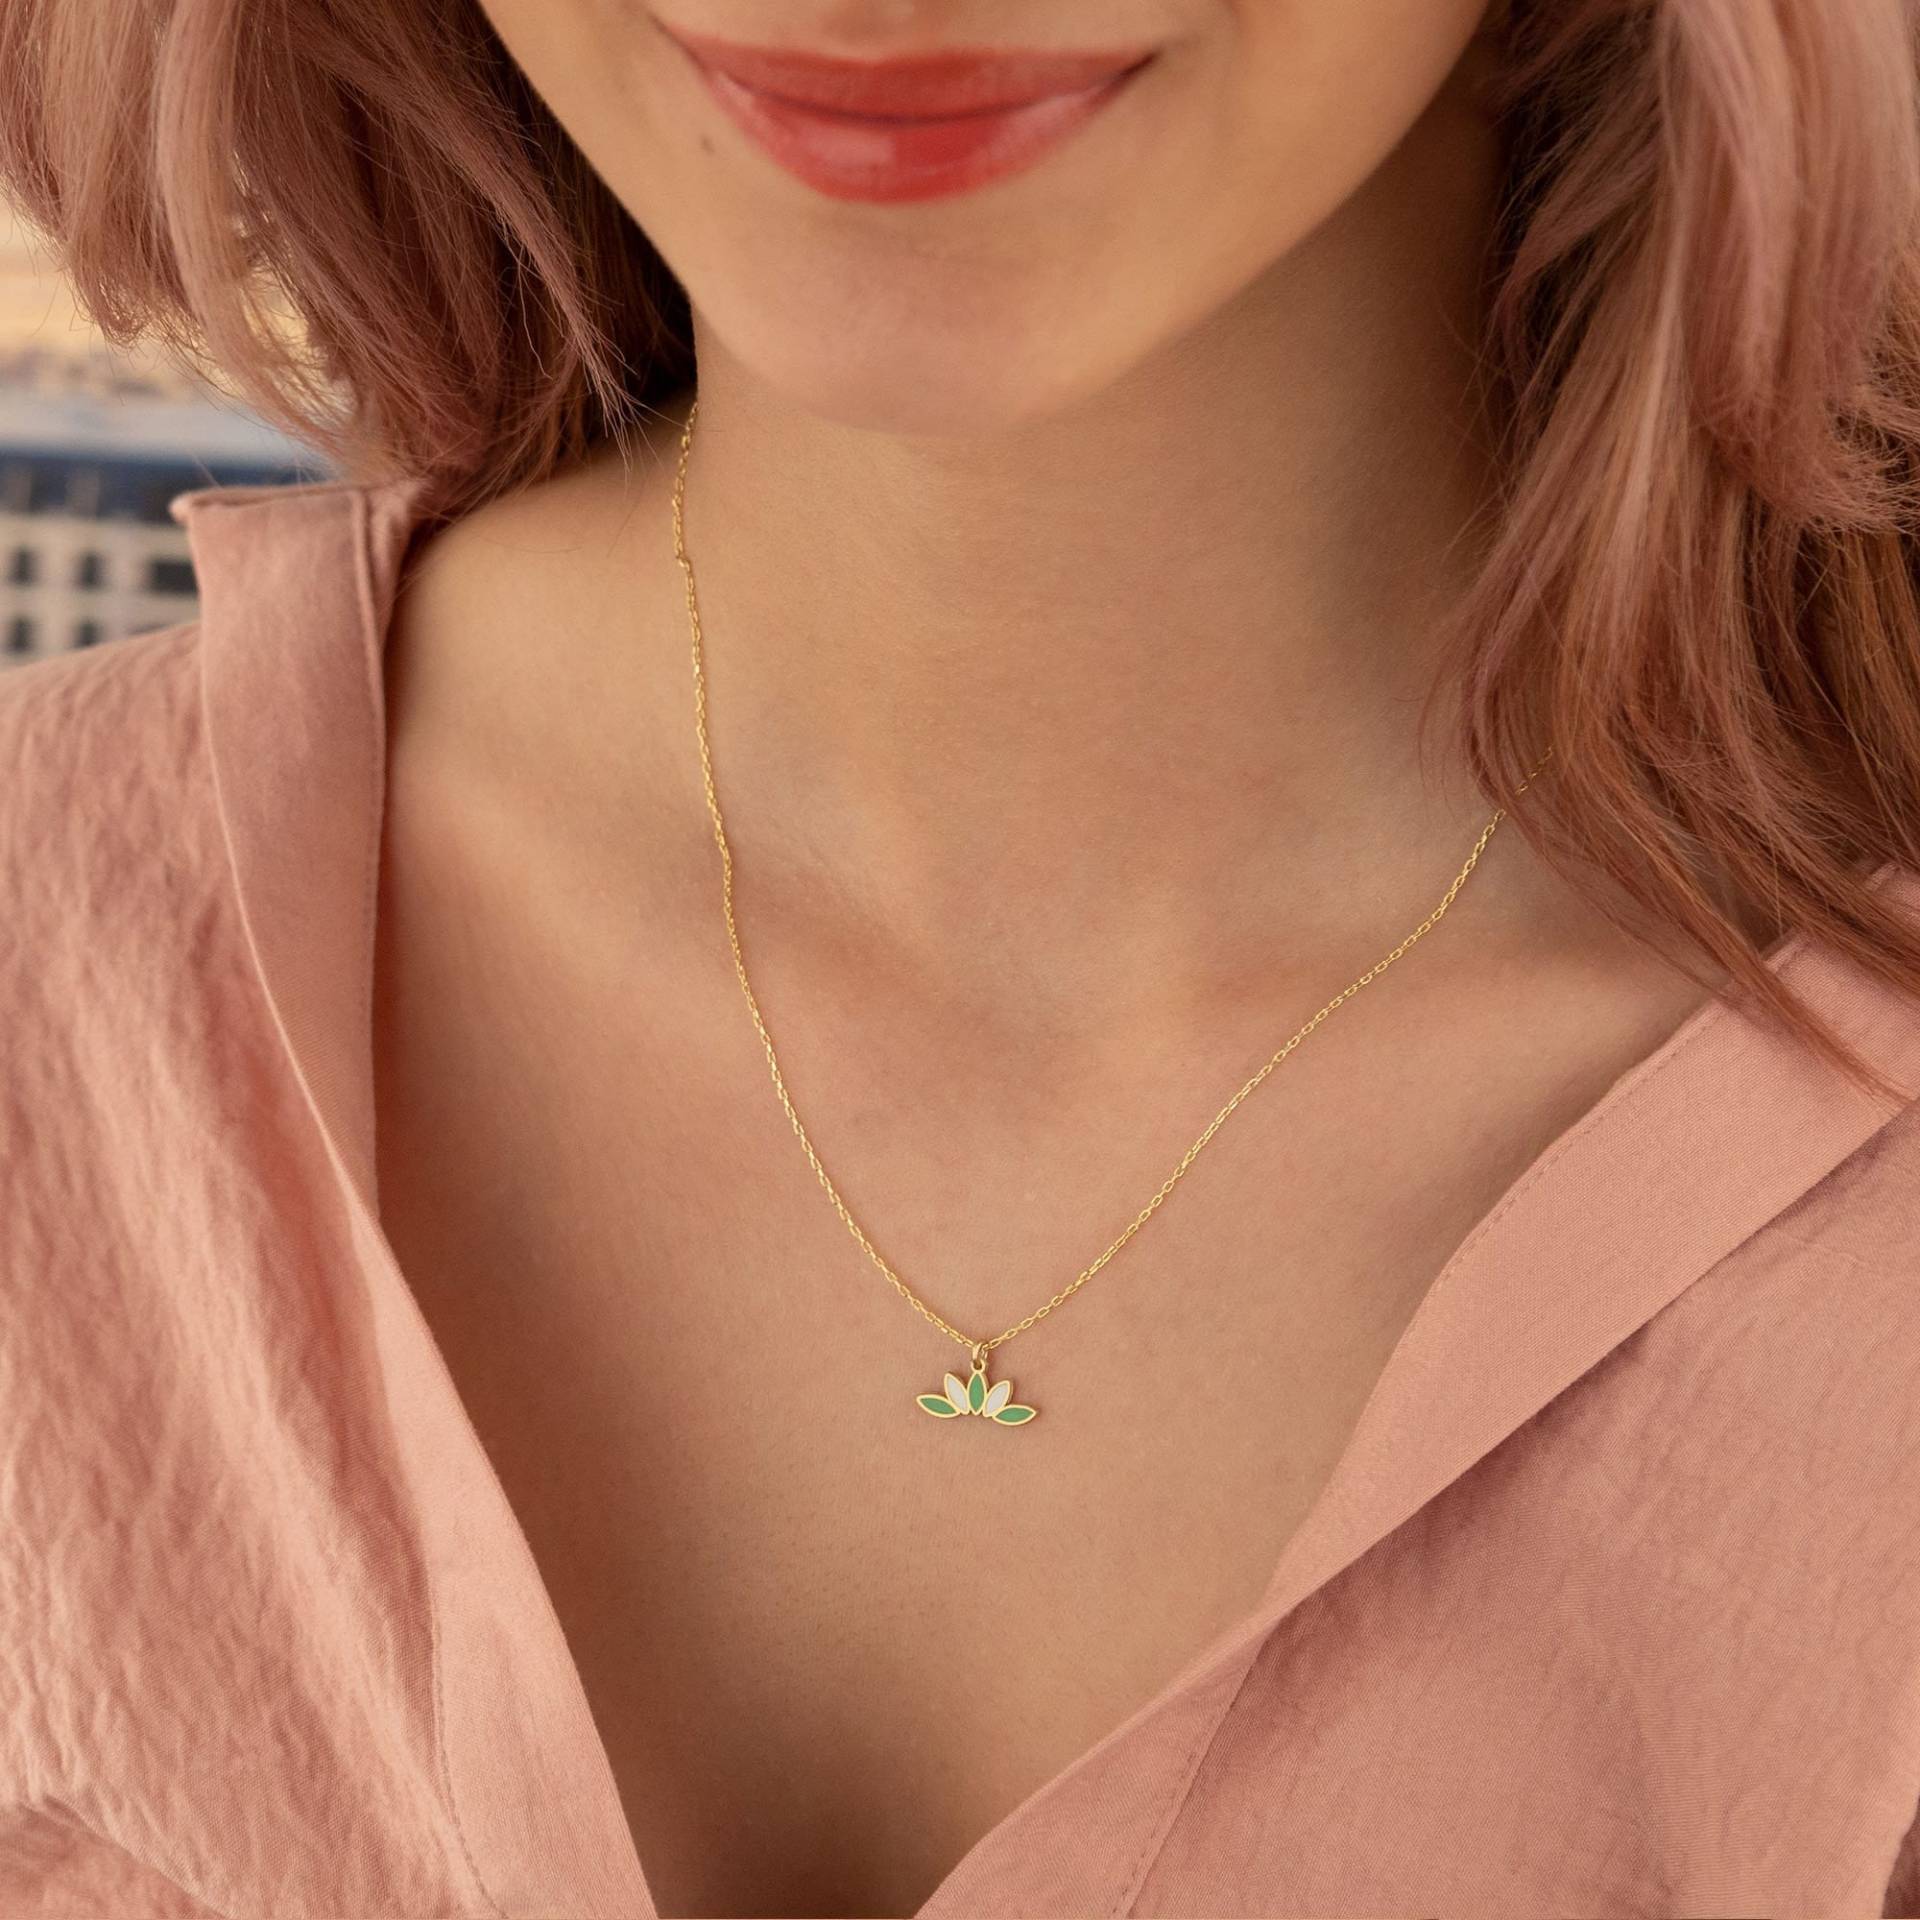 14K Solid Gold Lotus Halskette - Echt Grün & Weiß Blume Geschenk Für Sie Schmuck von MissTubiJewellery